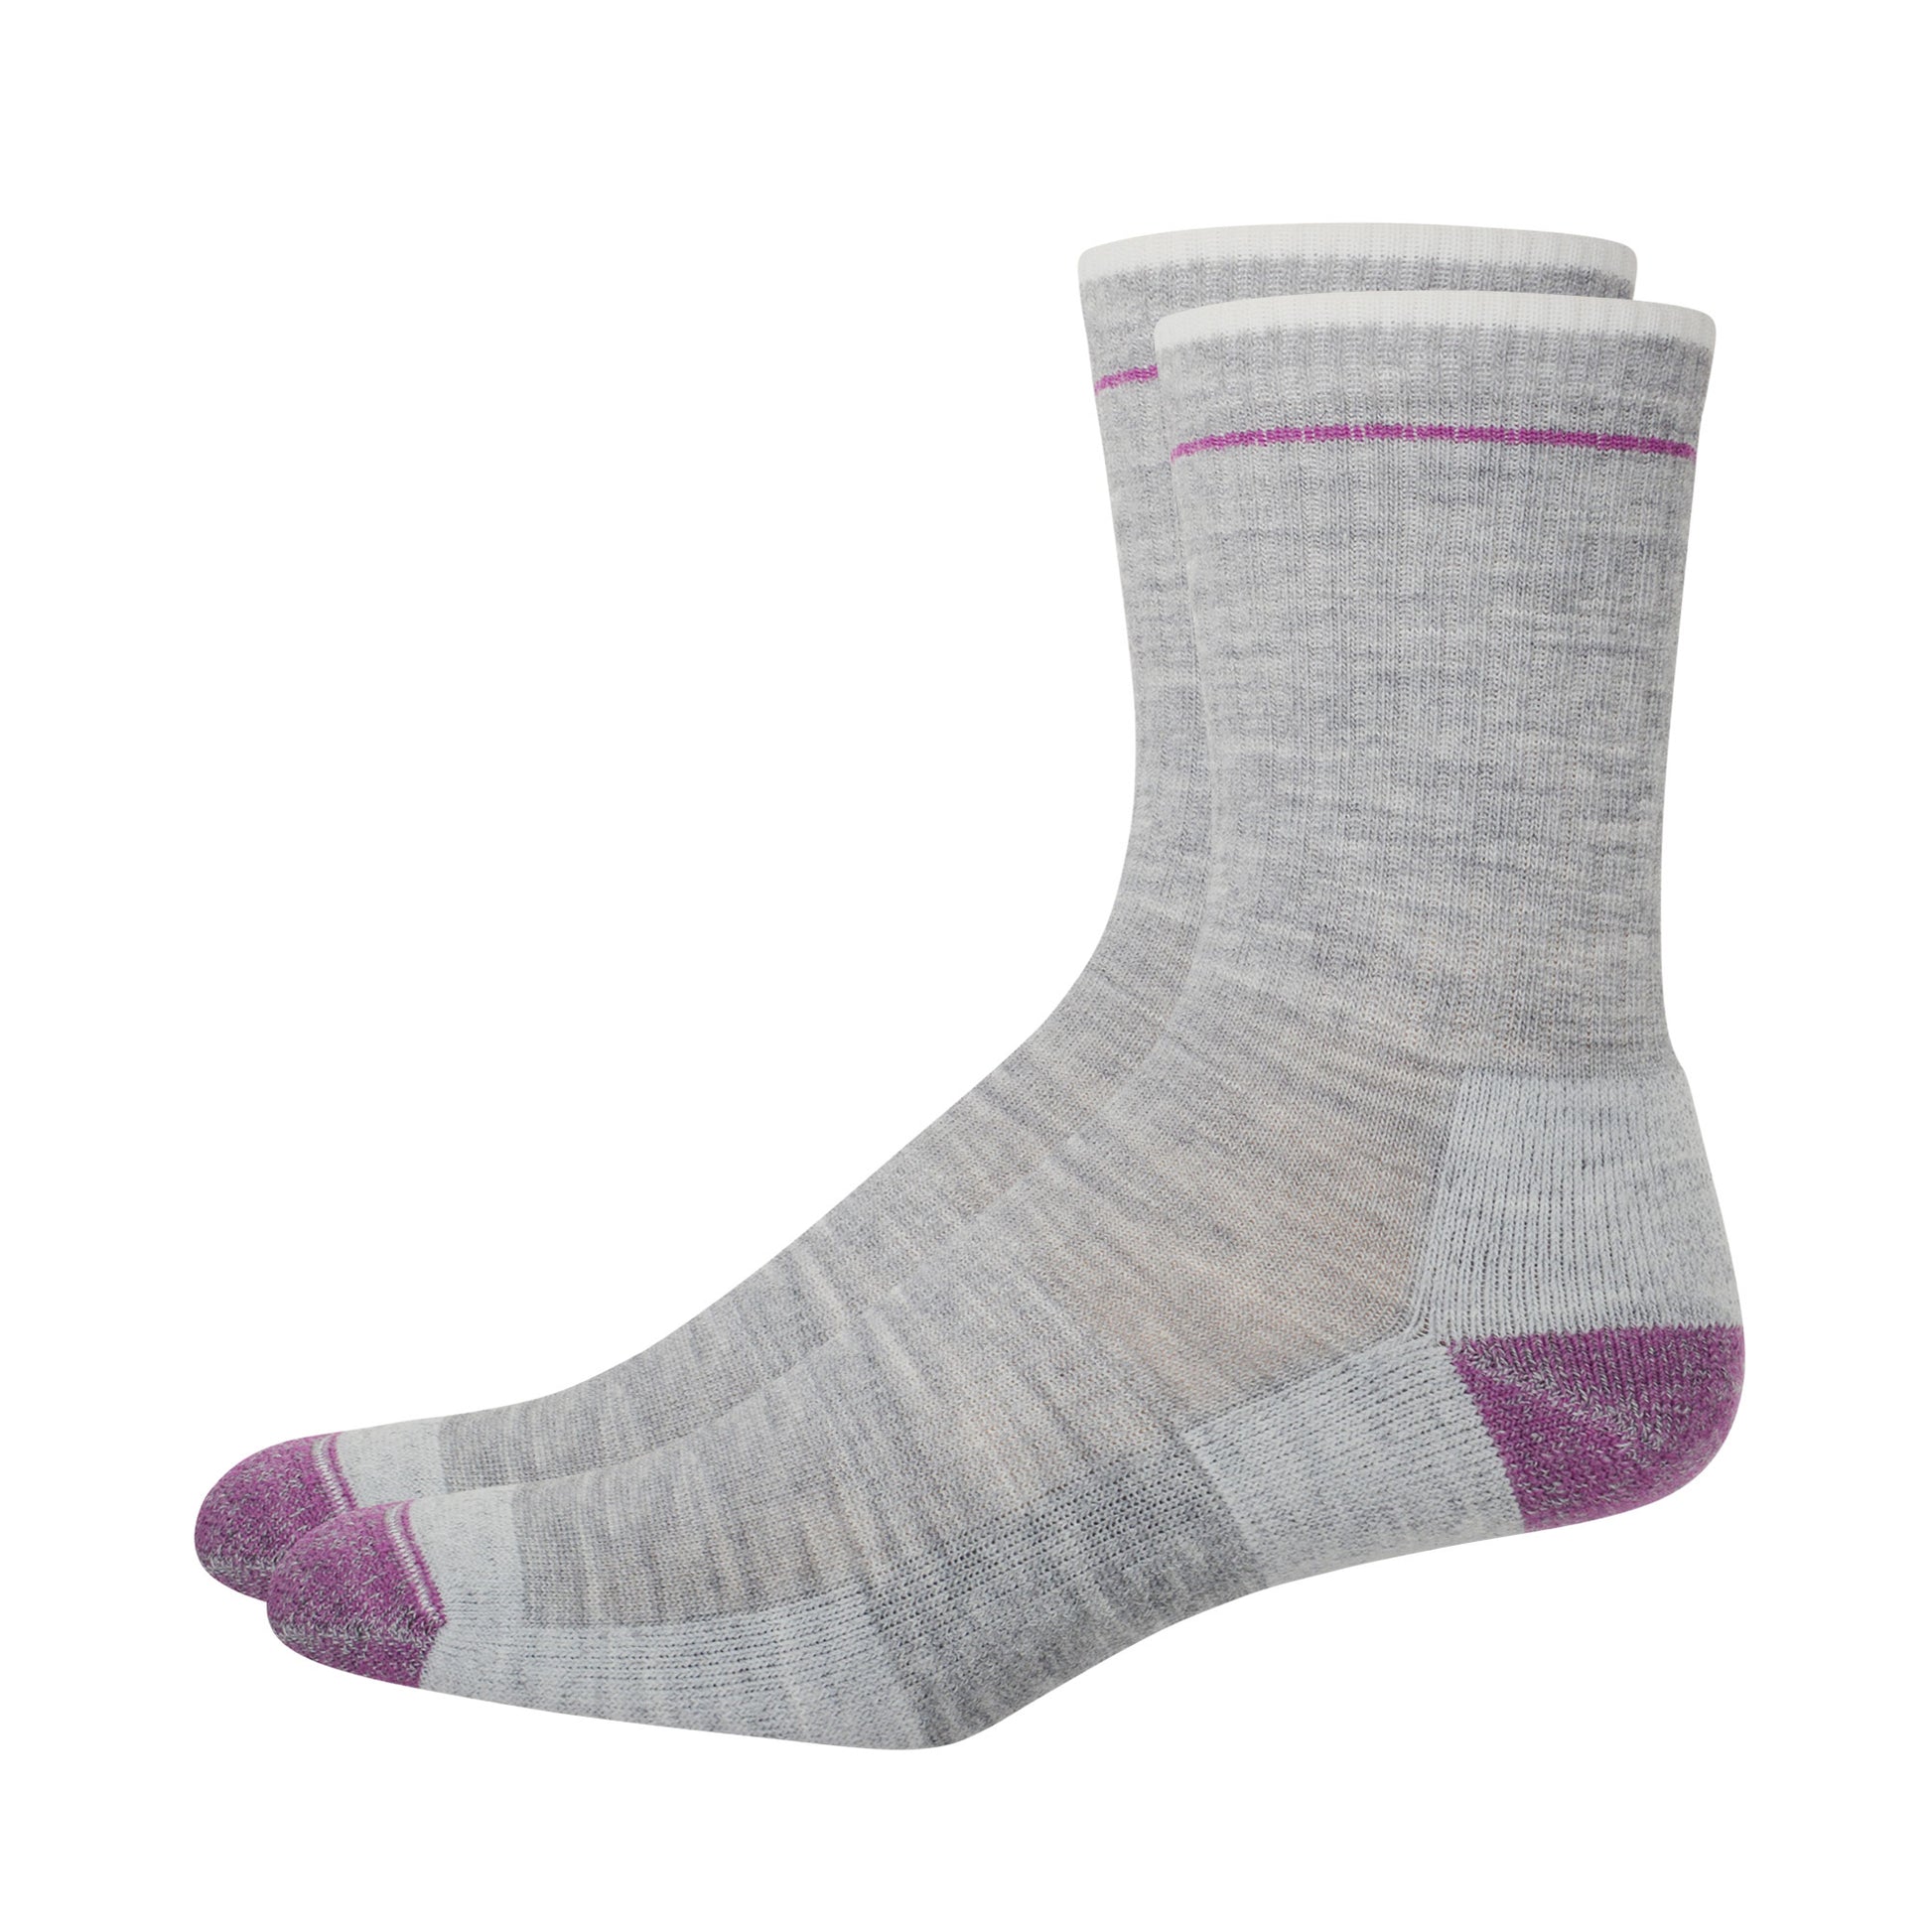 Pair of gray and purple merino wool outdoor socks. 